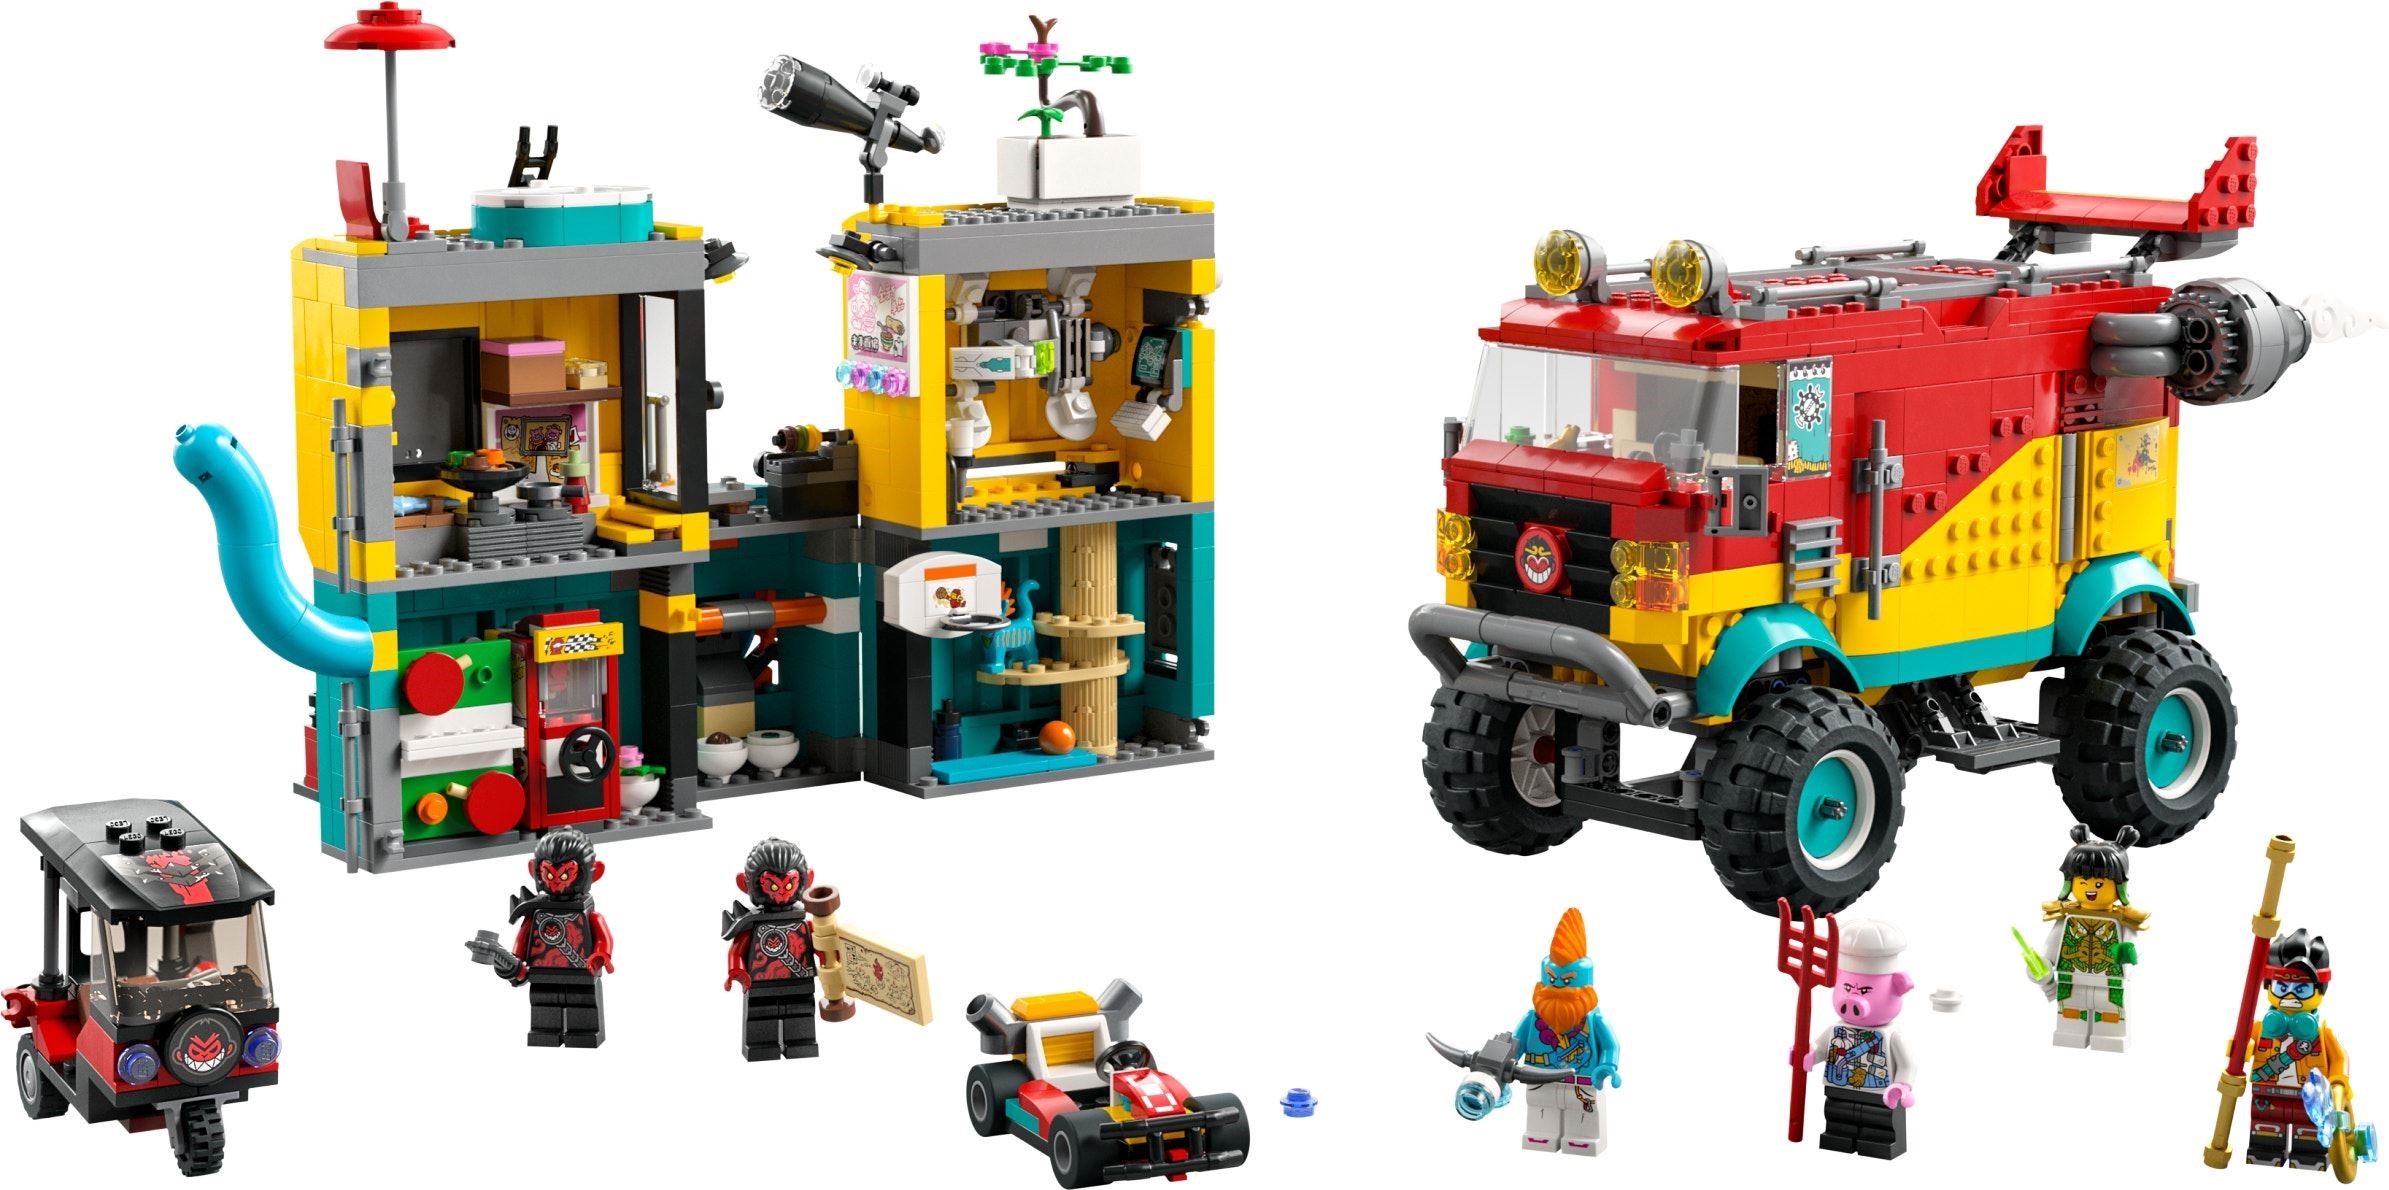 Summer Monkie Kid sets unveiled! Brickset: LEGO and database